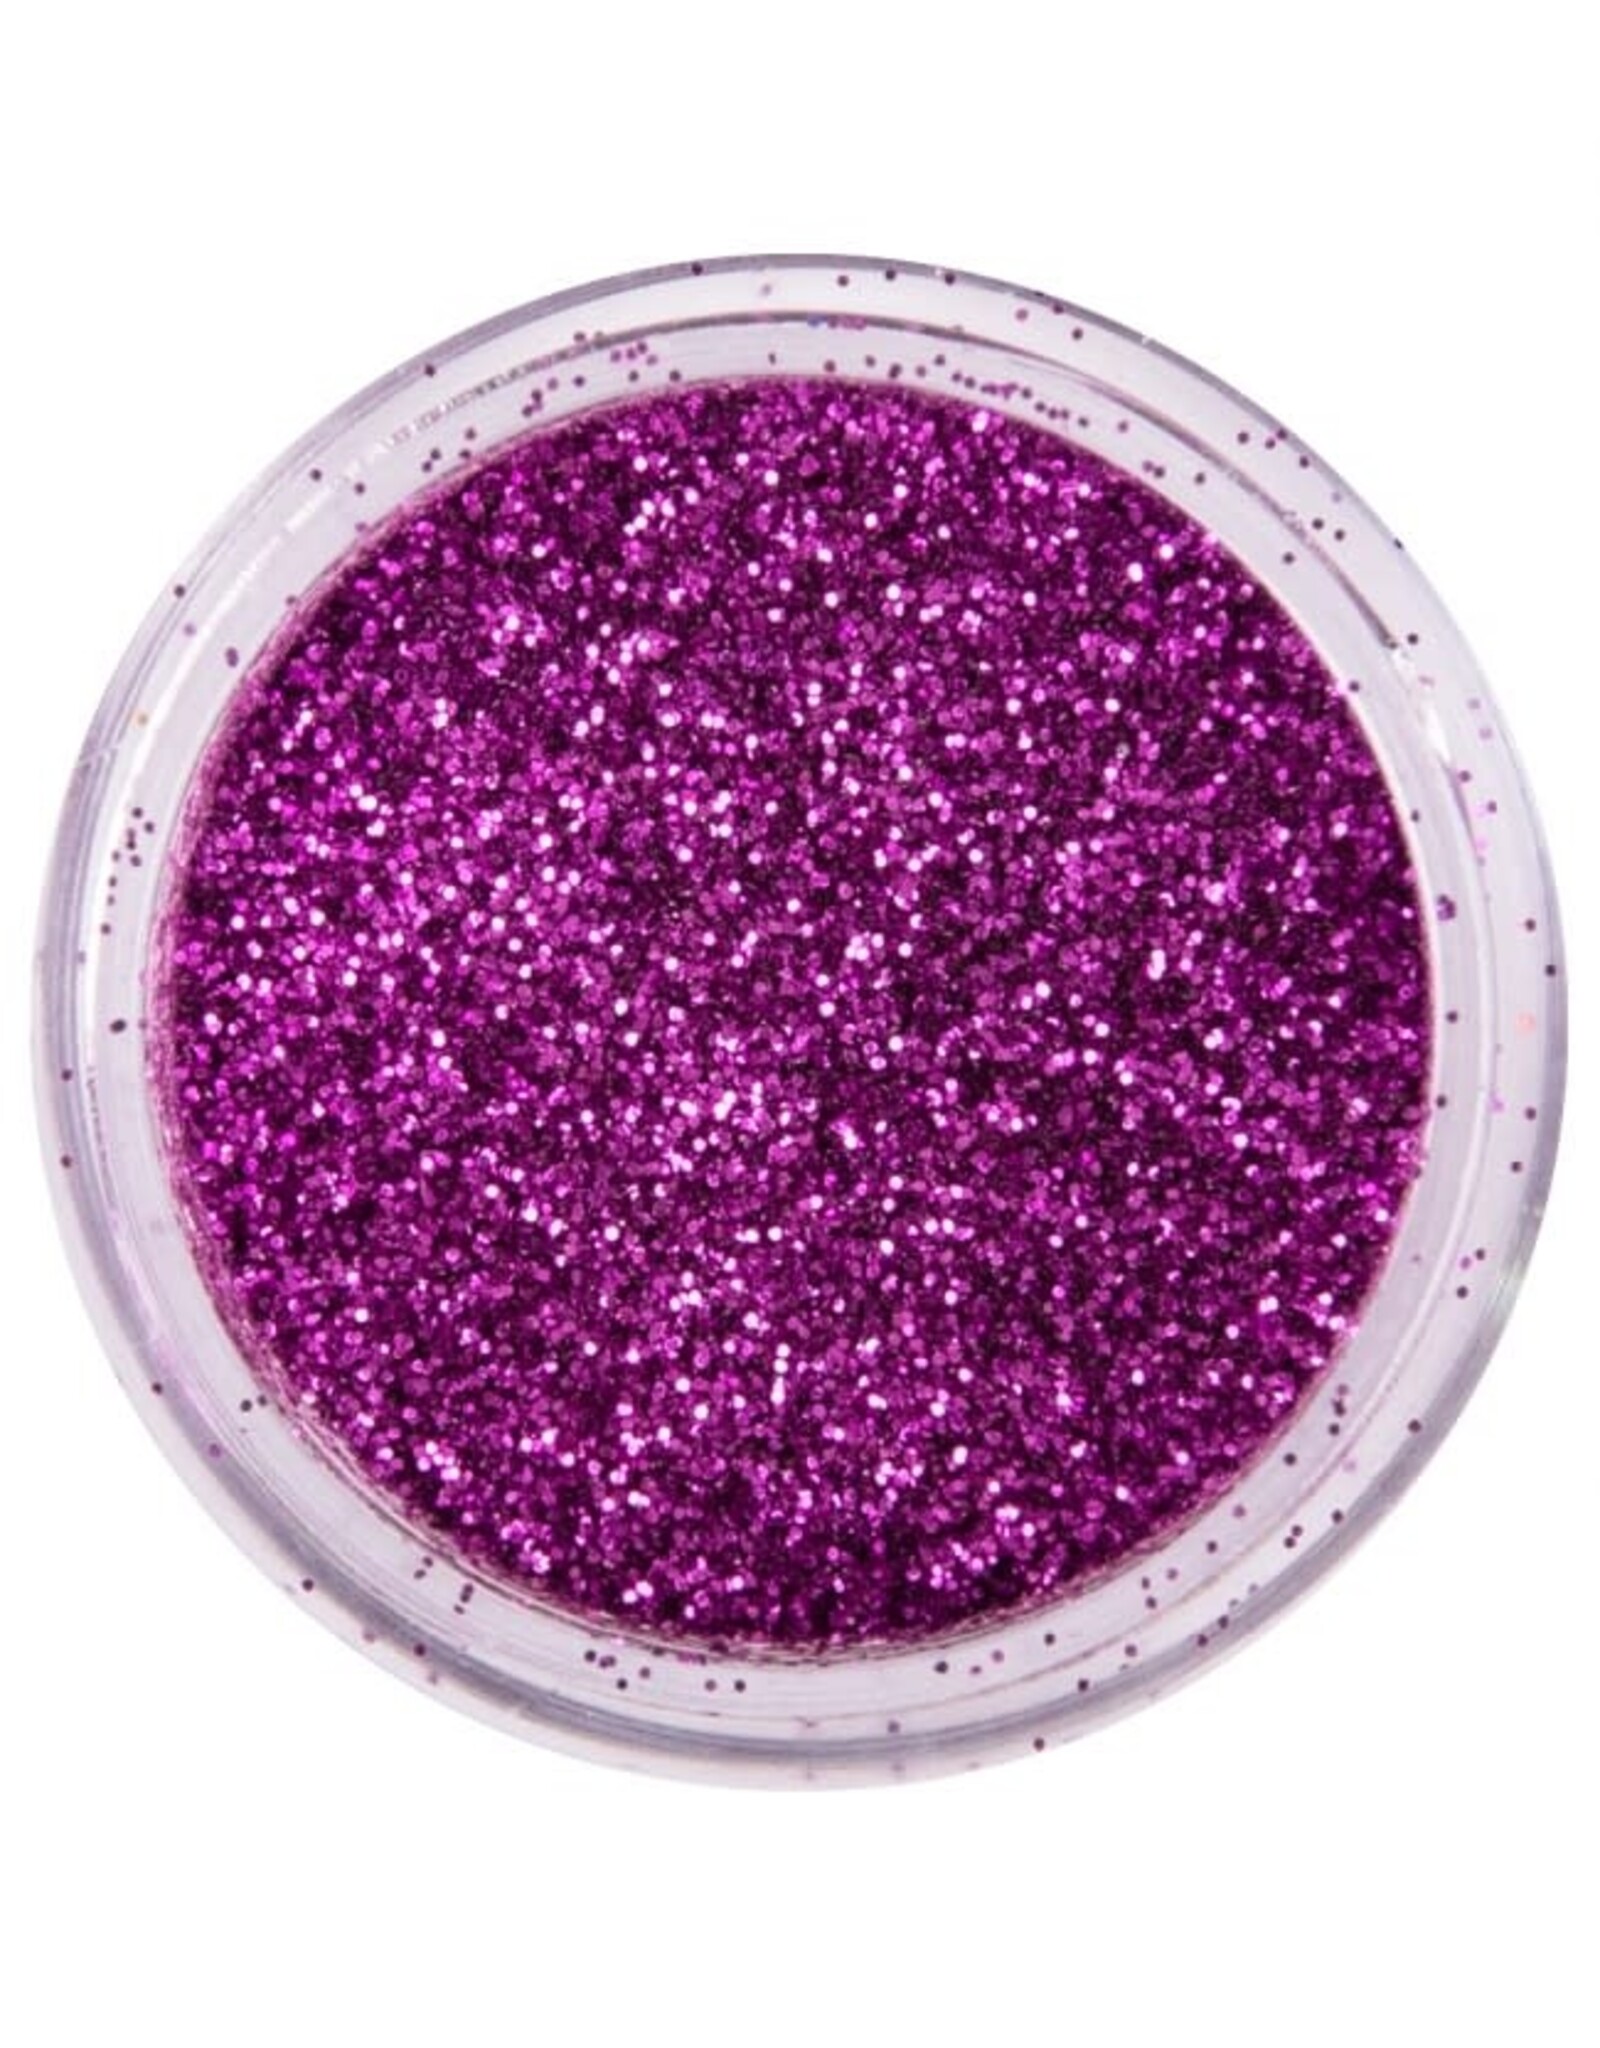 PartyXplosion PXP biodegradable powder glitter 2.5g royal purple